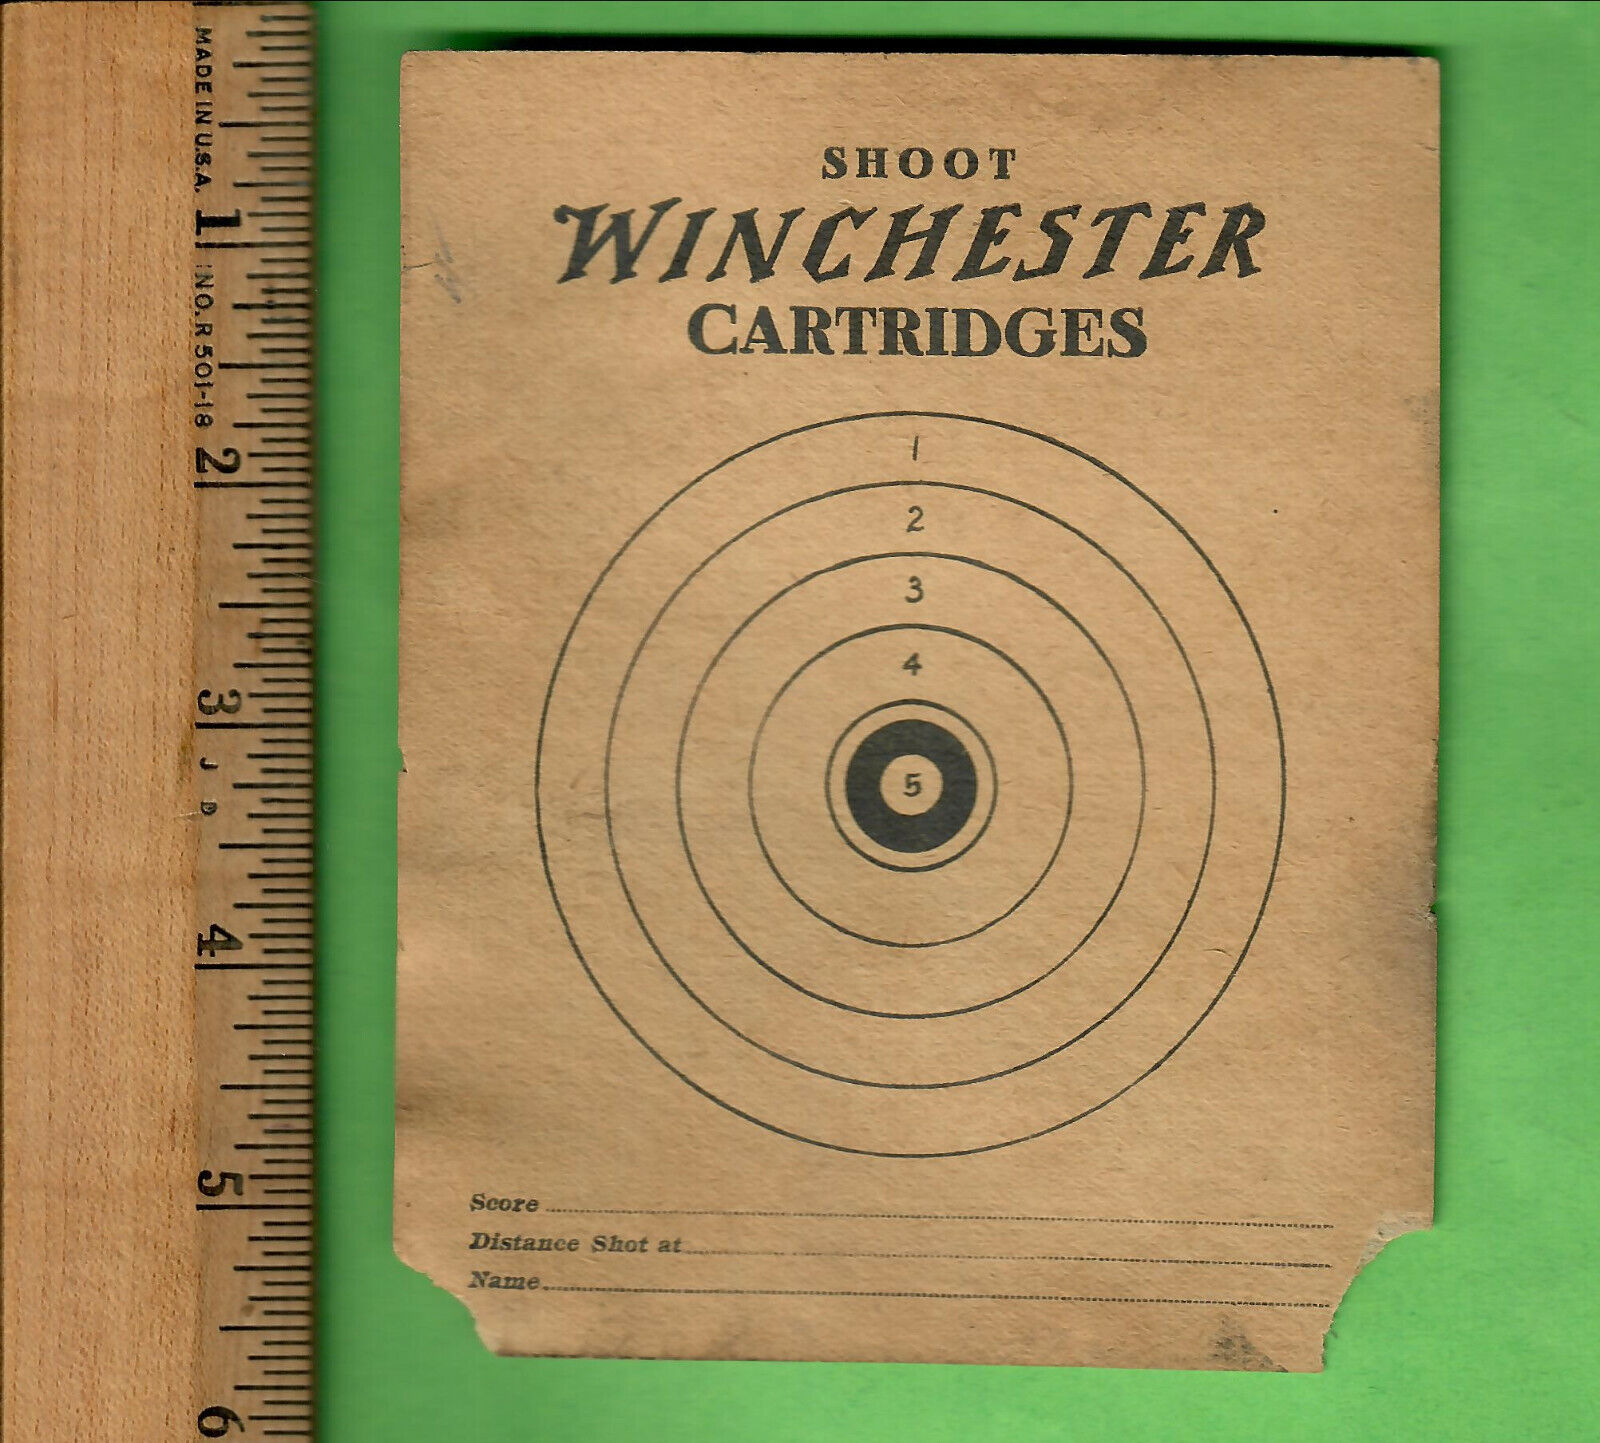 1917 SHOOT WINCHESTER CARTRIDGES ADVERTISEMENT TARGET INSERT 4.5